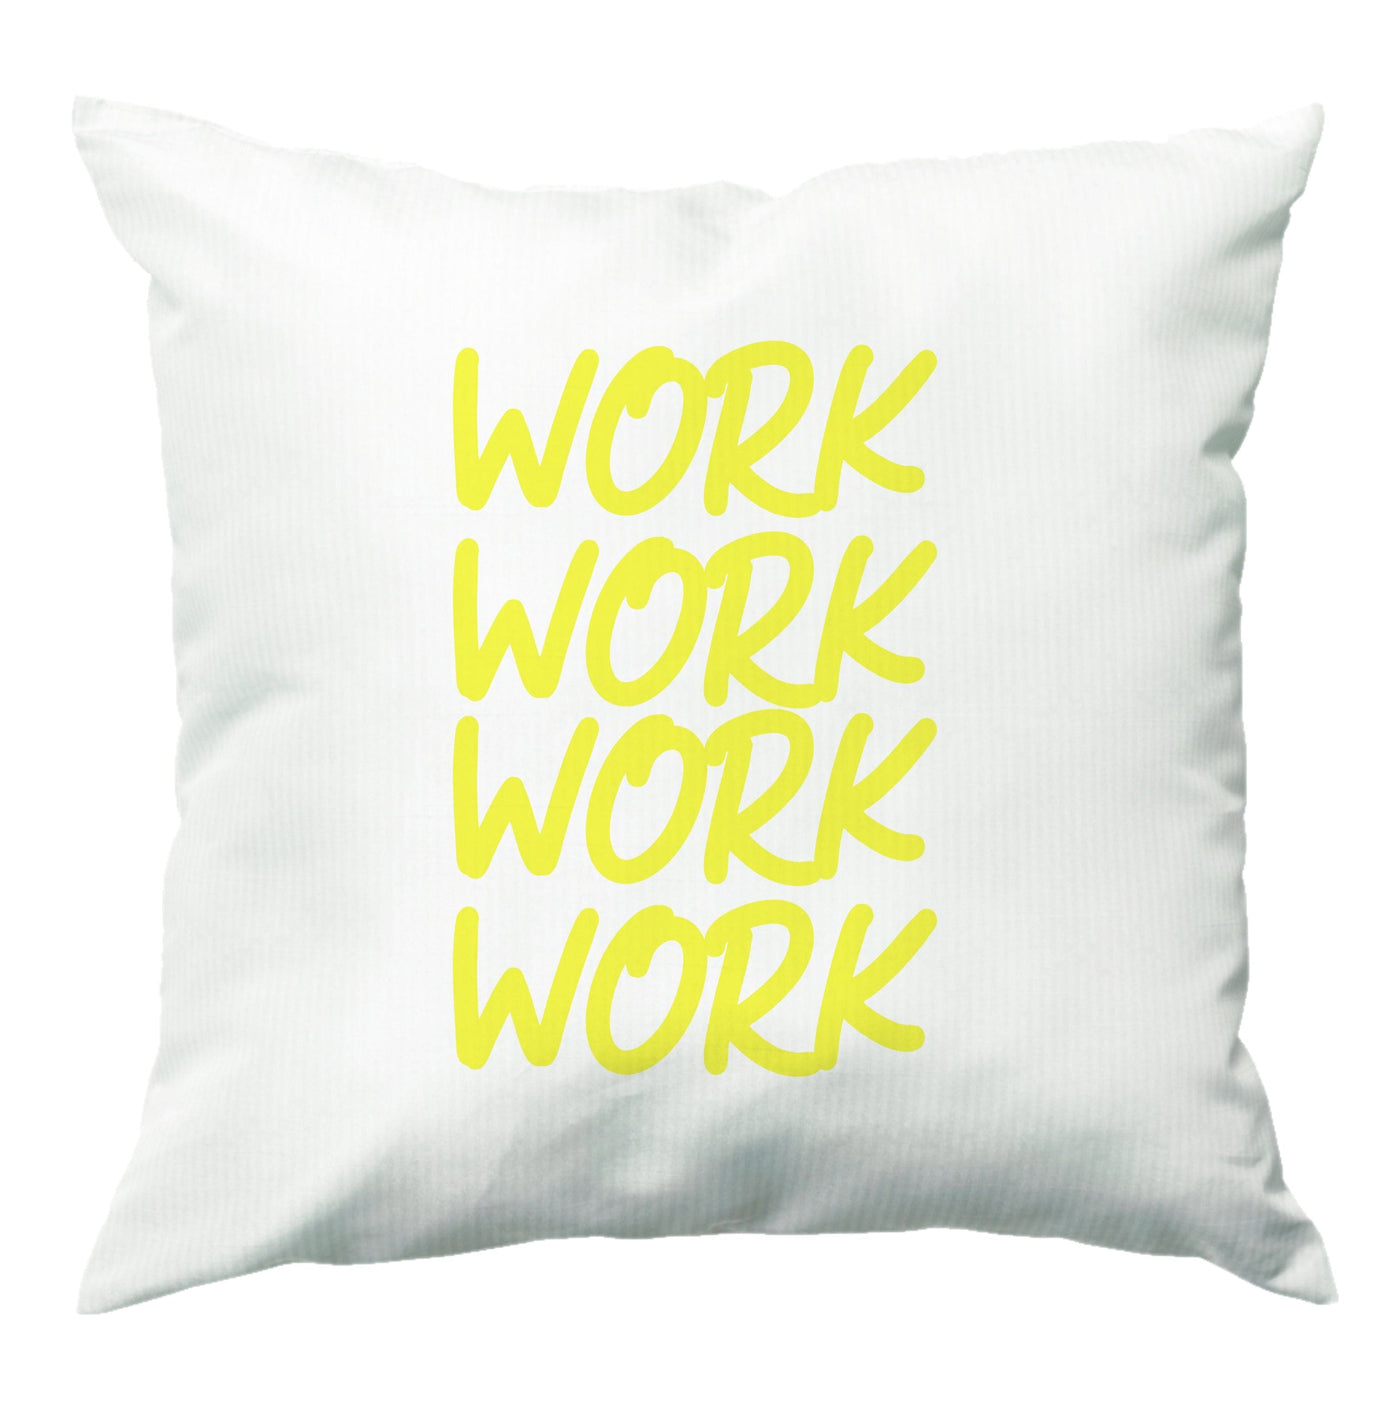 Work Work Work - Rihanna Cushion